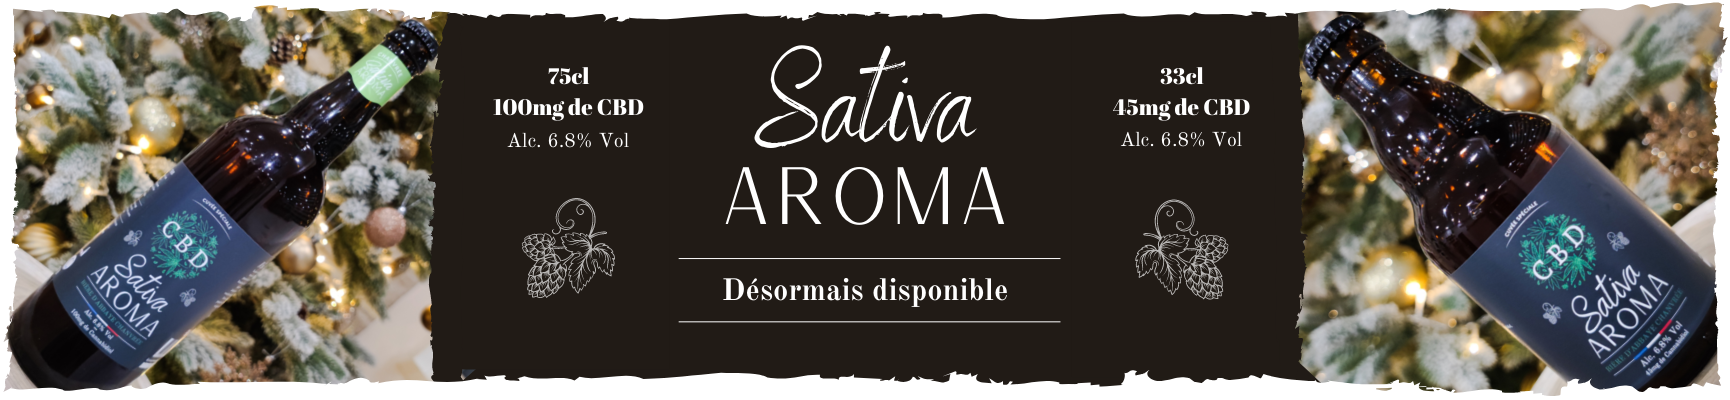 Sativa Aroma